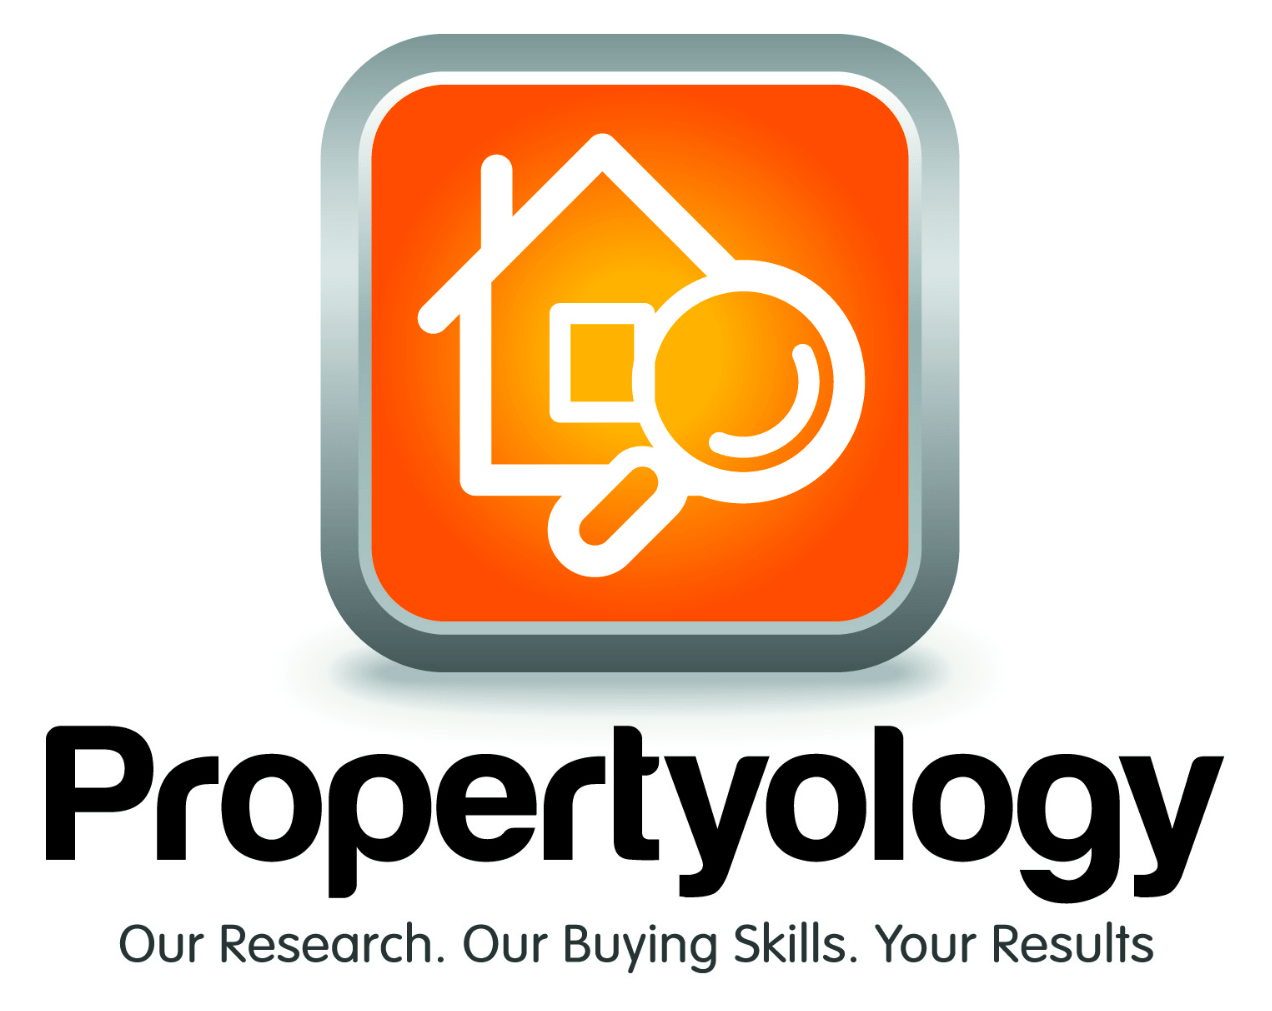 Propertyology